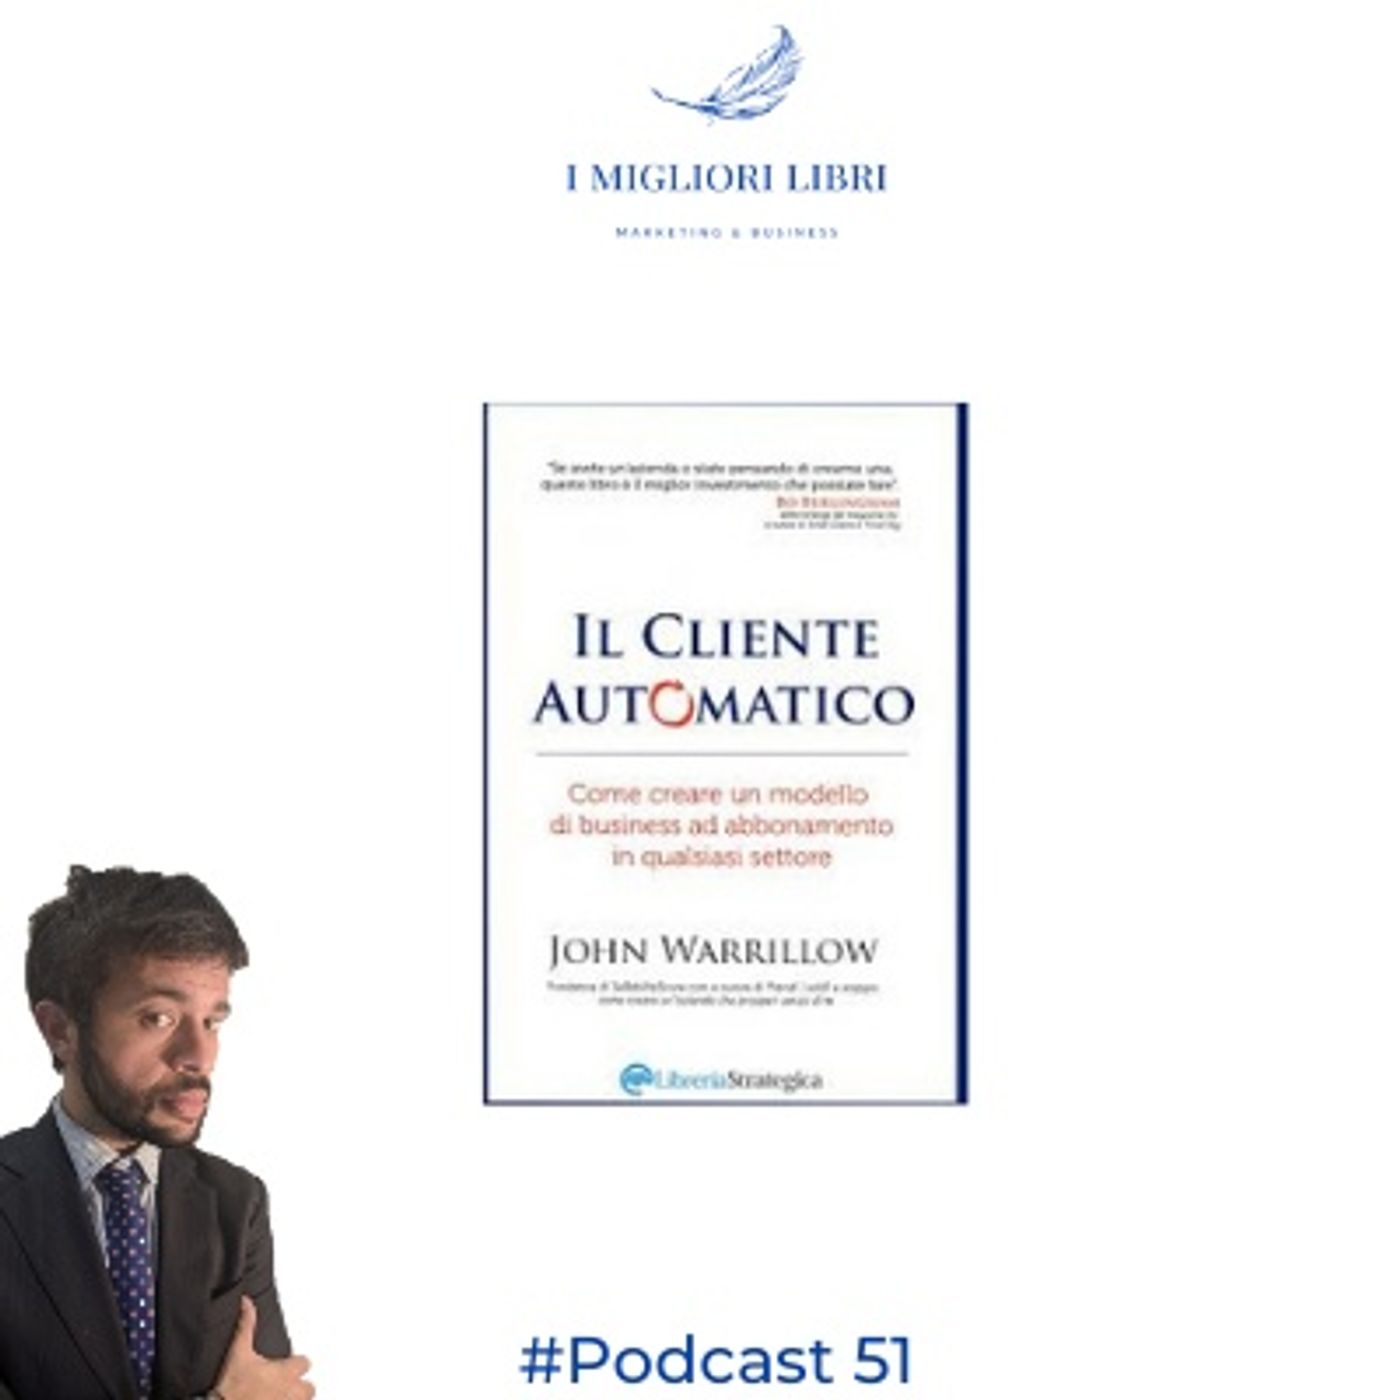 Episodio 51 - "Il cliente automatico" di J. Warrilow - I Migliori Libri - Marketing & Business